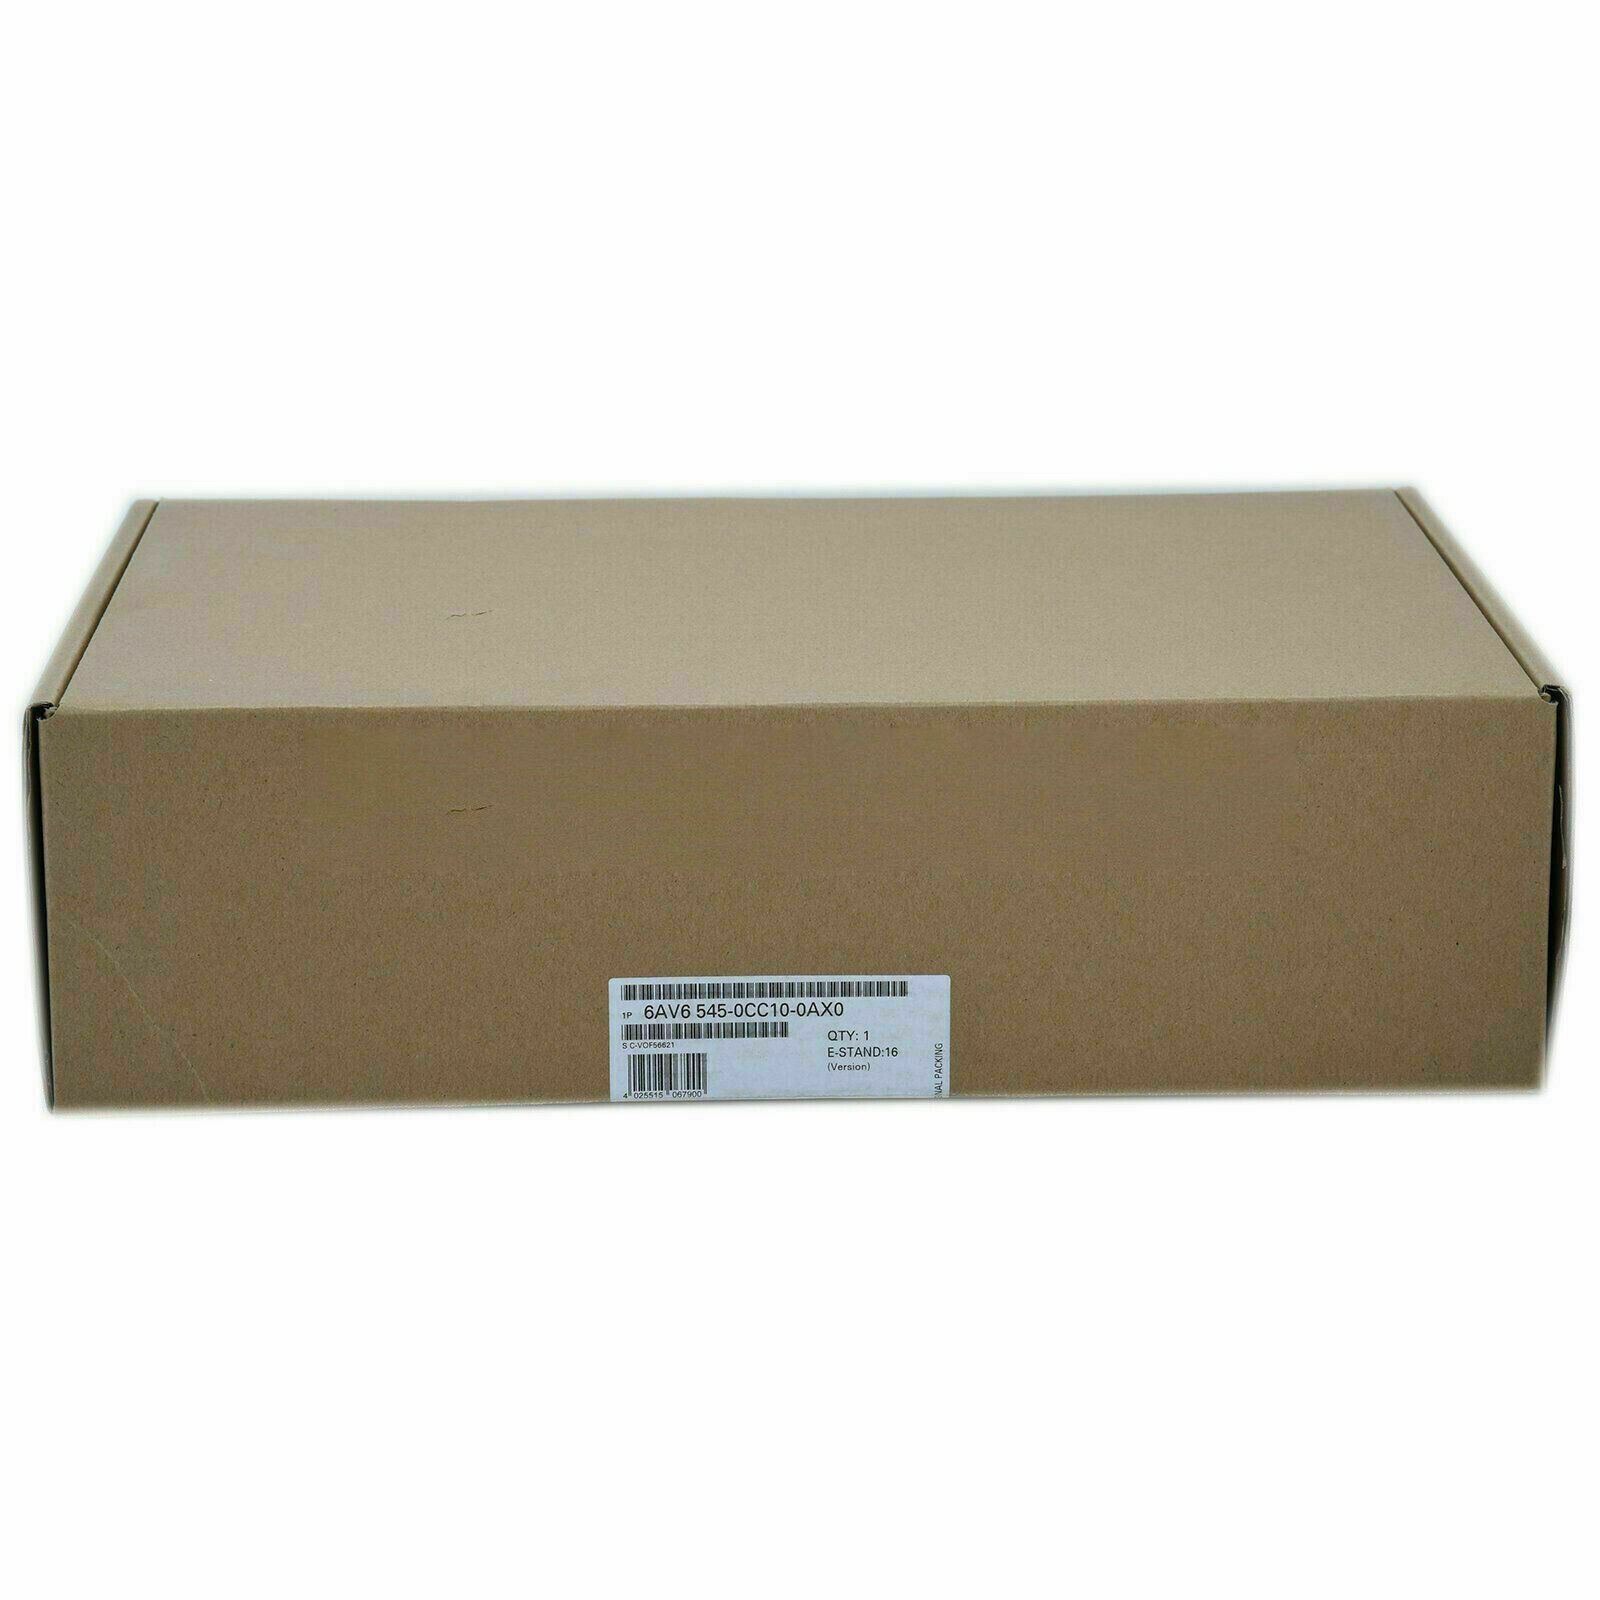 1PC Siemens 6AV6 545-0CC10-0AX0 6AV6545-0CC10-0AX New In Box Expedited Shipping